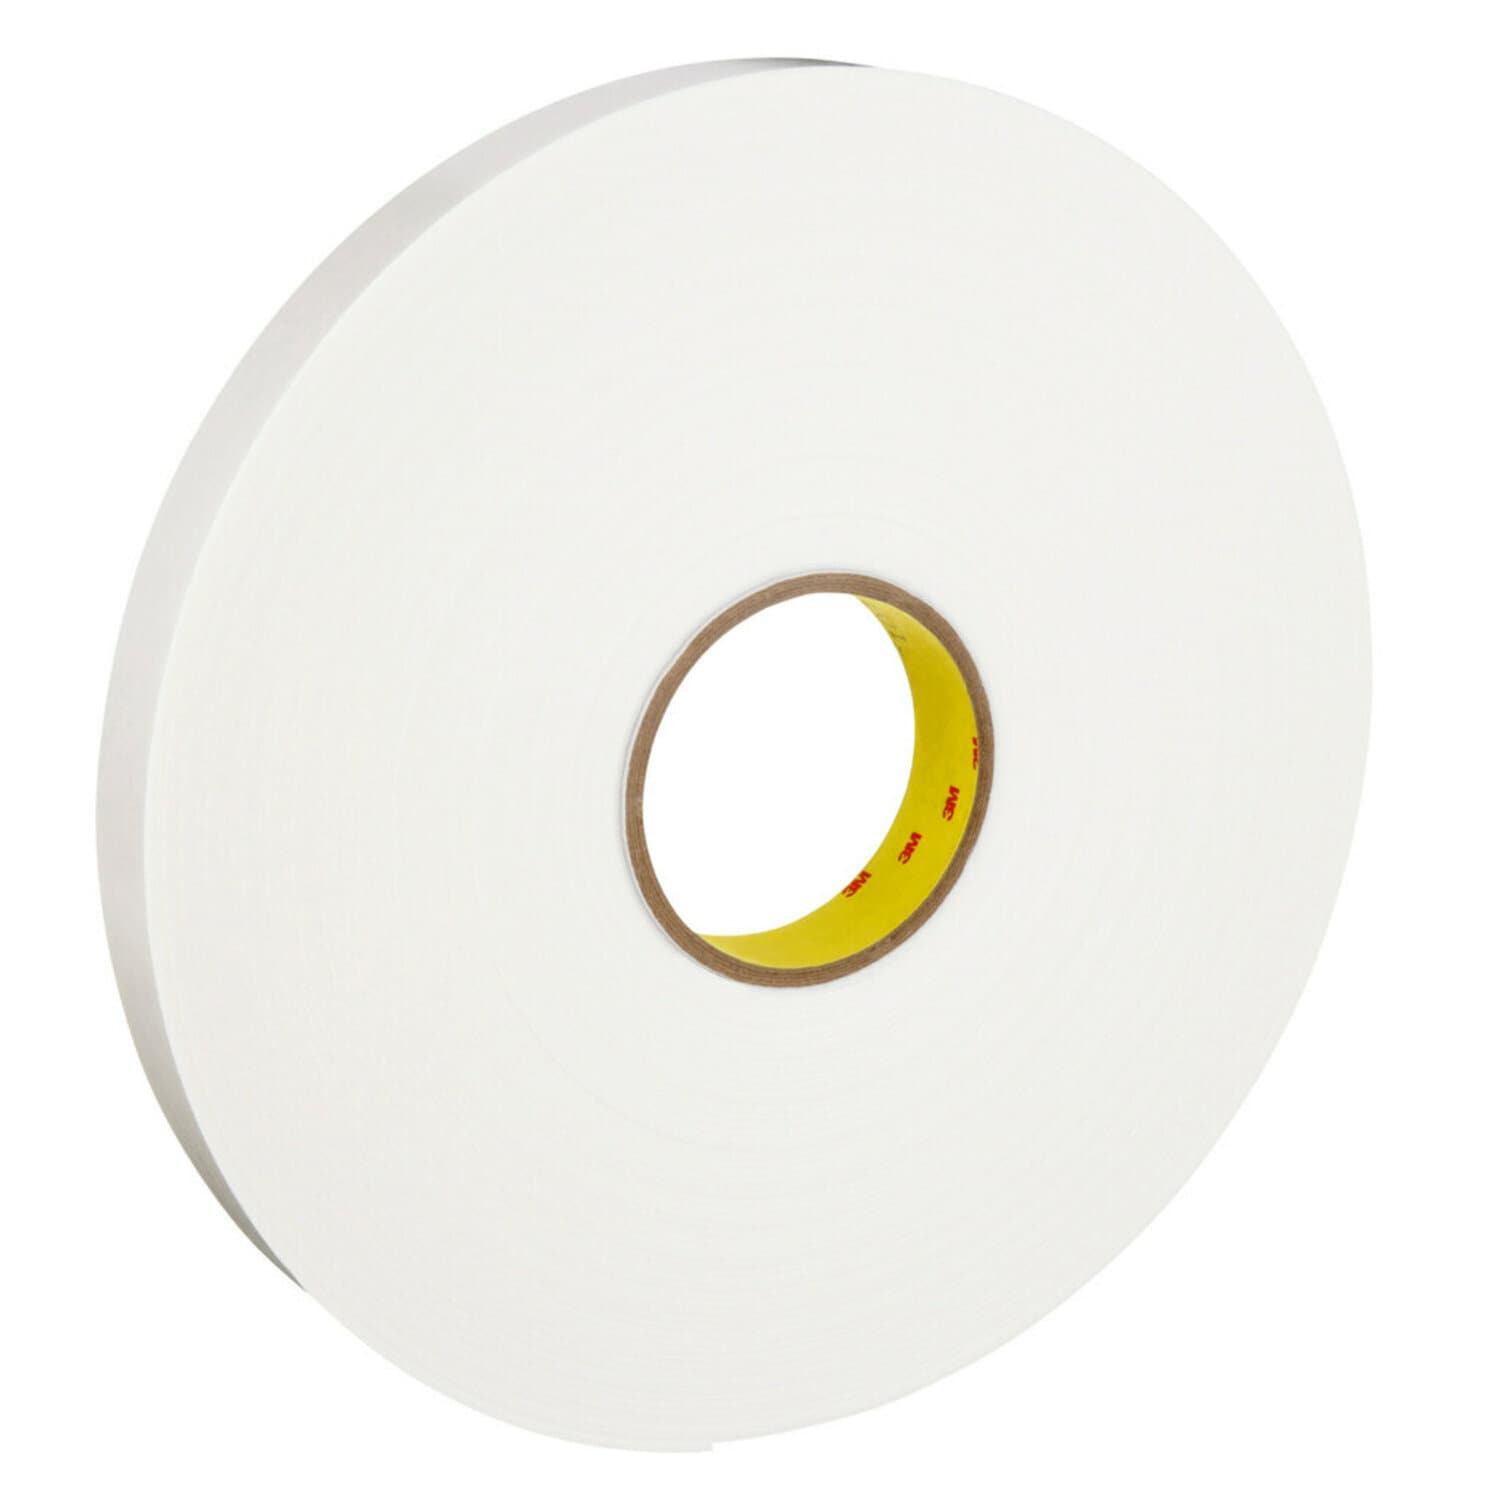 7000123600 - 3M Double Coated Polyethylene Foam Tape 4466, White, 1 in x 36 yd, 62
mil, 9 rolls per case